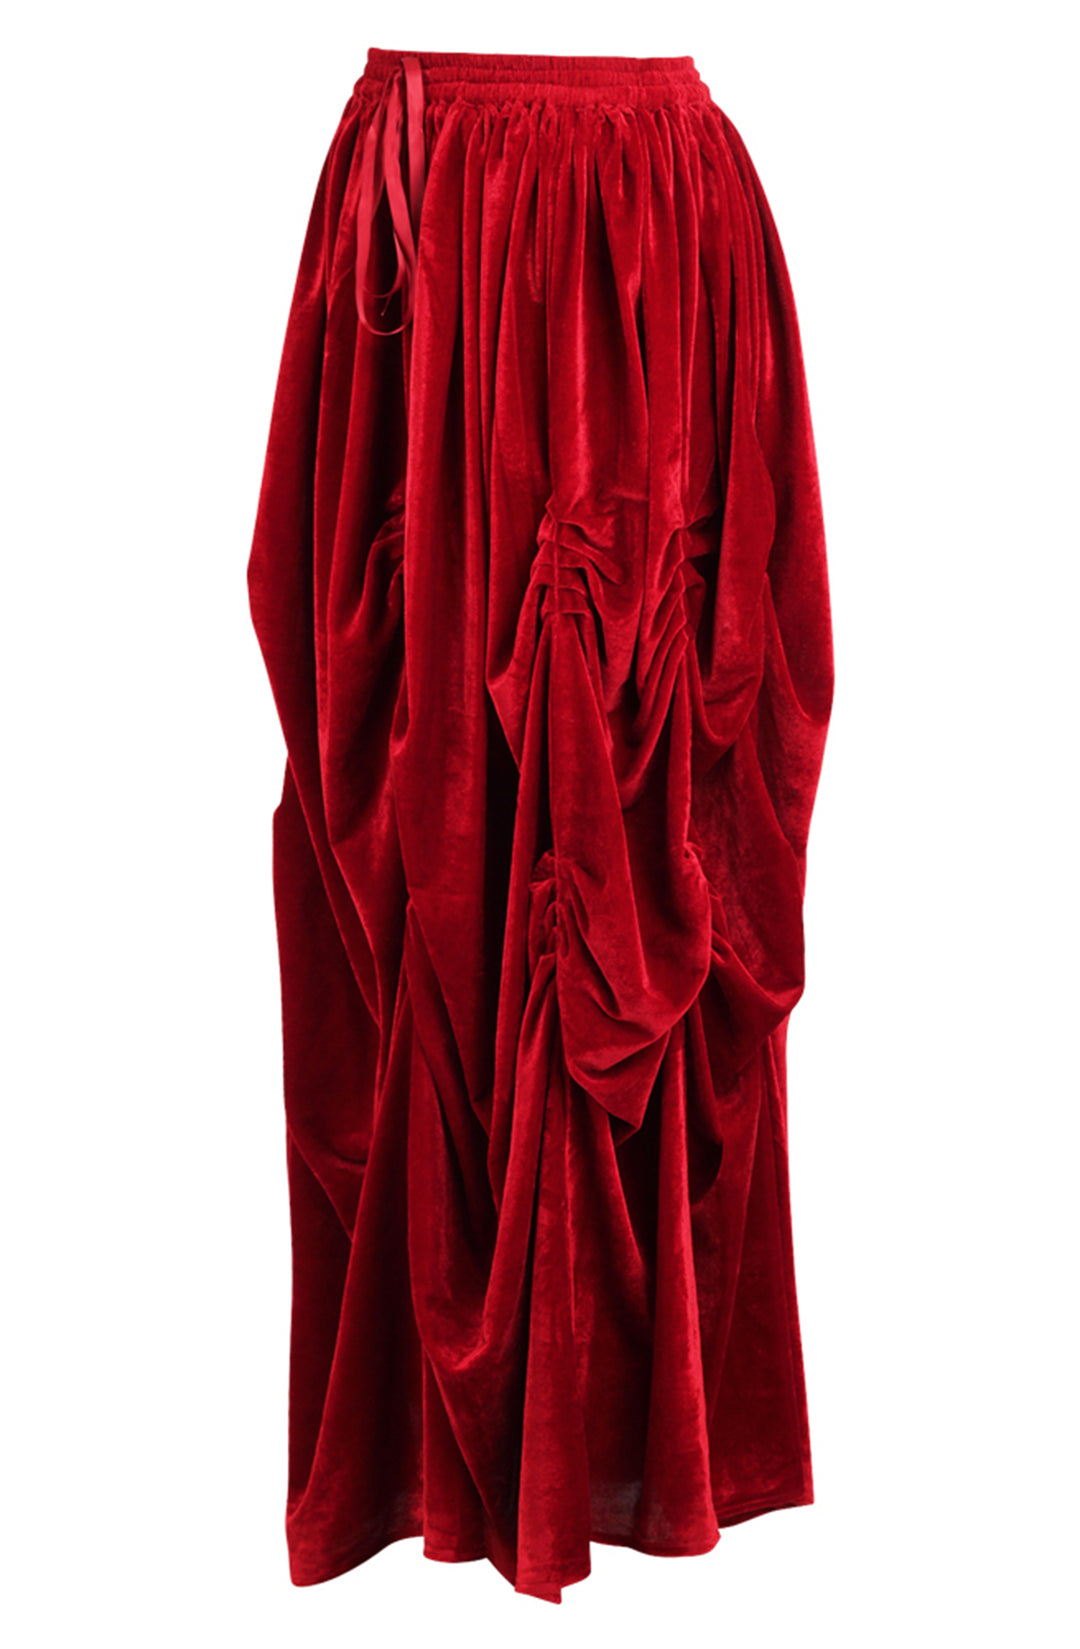 Scarlet Velvet Red Ball Gown Skirt 3